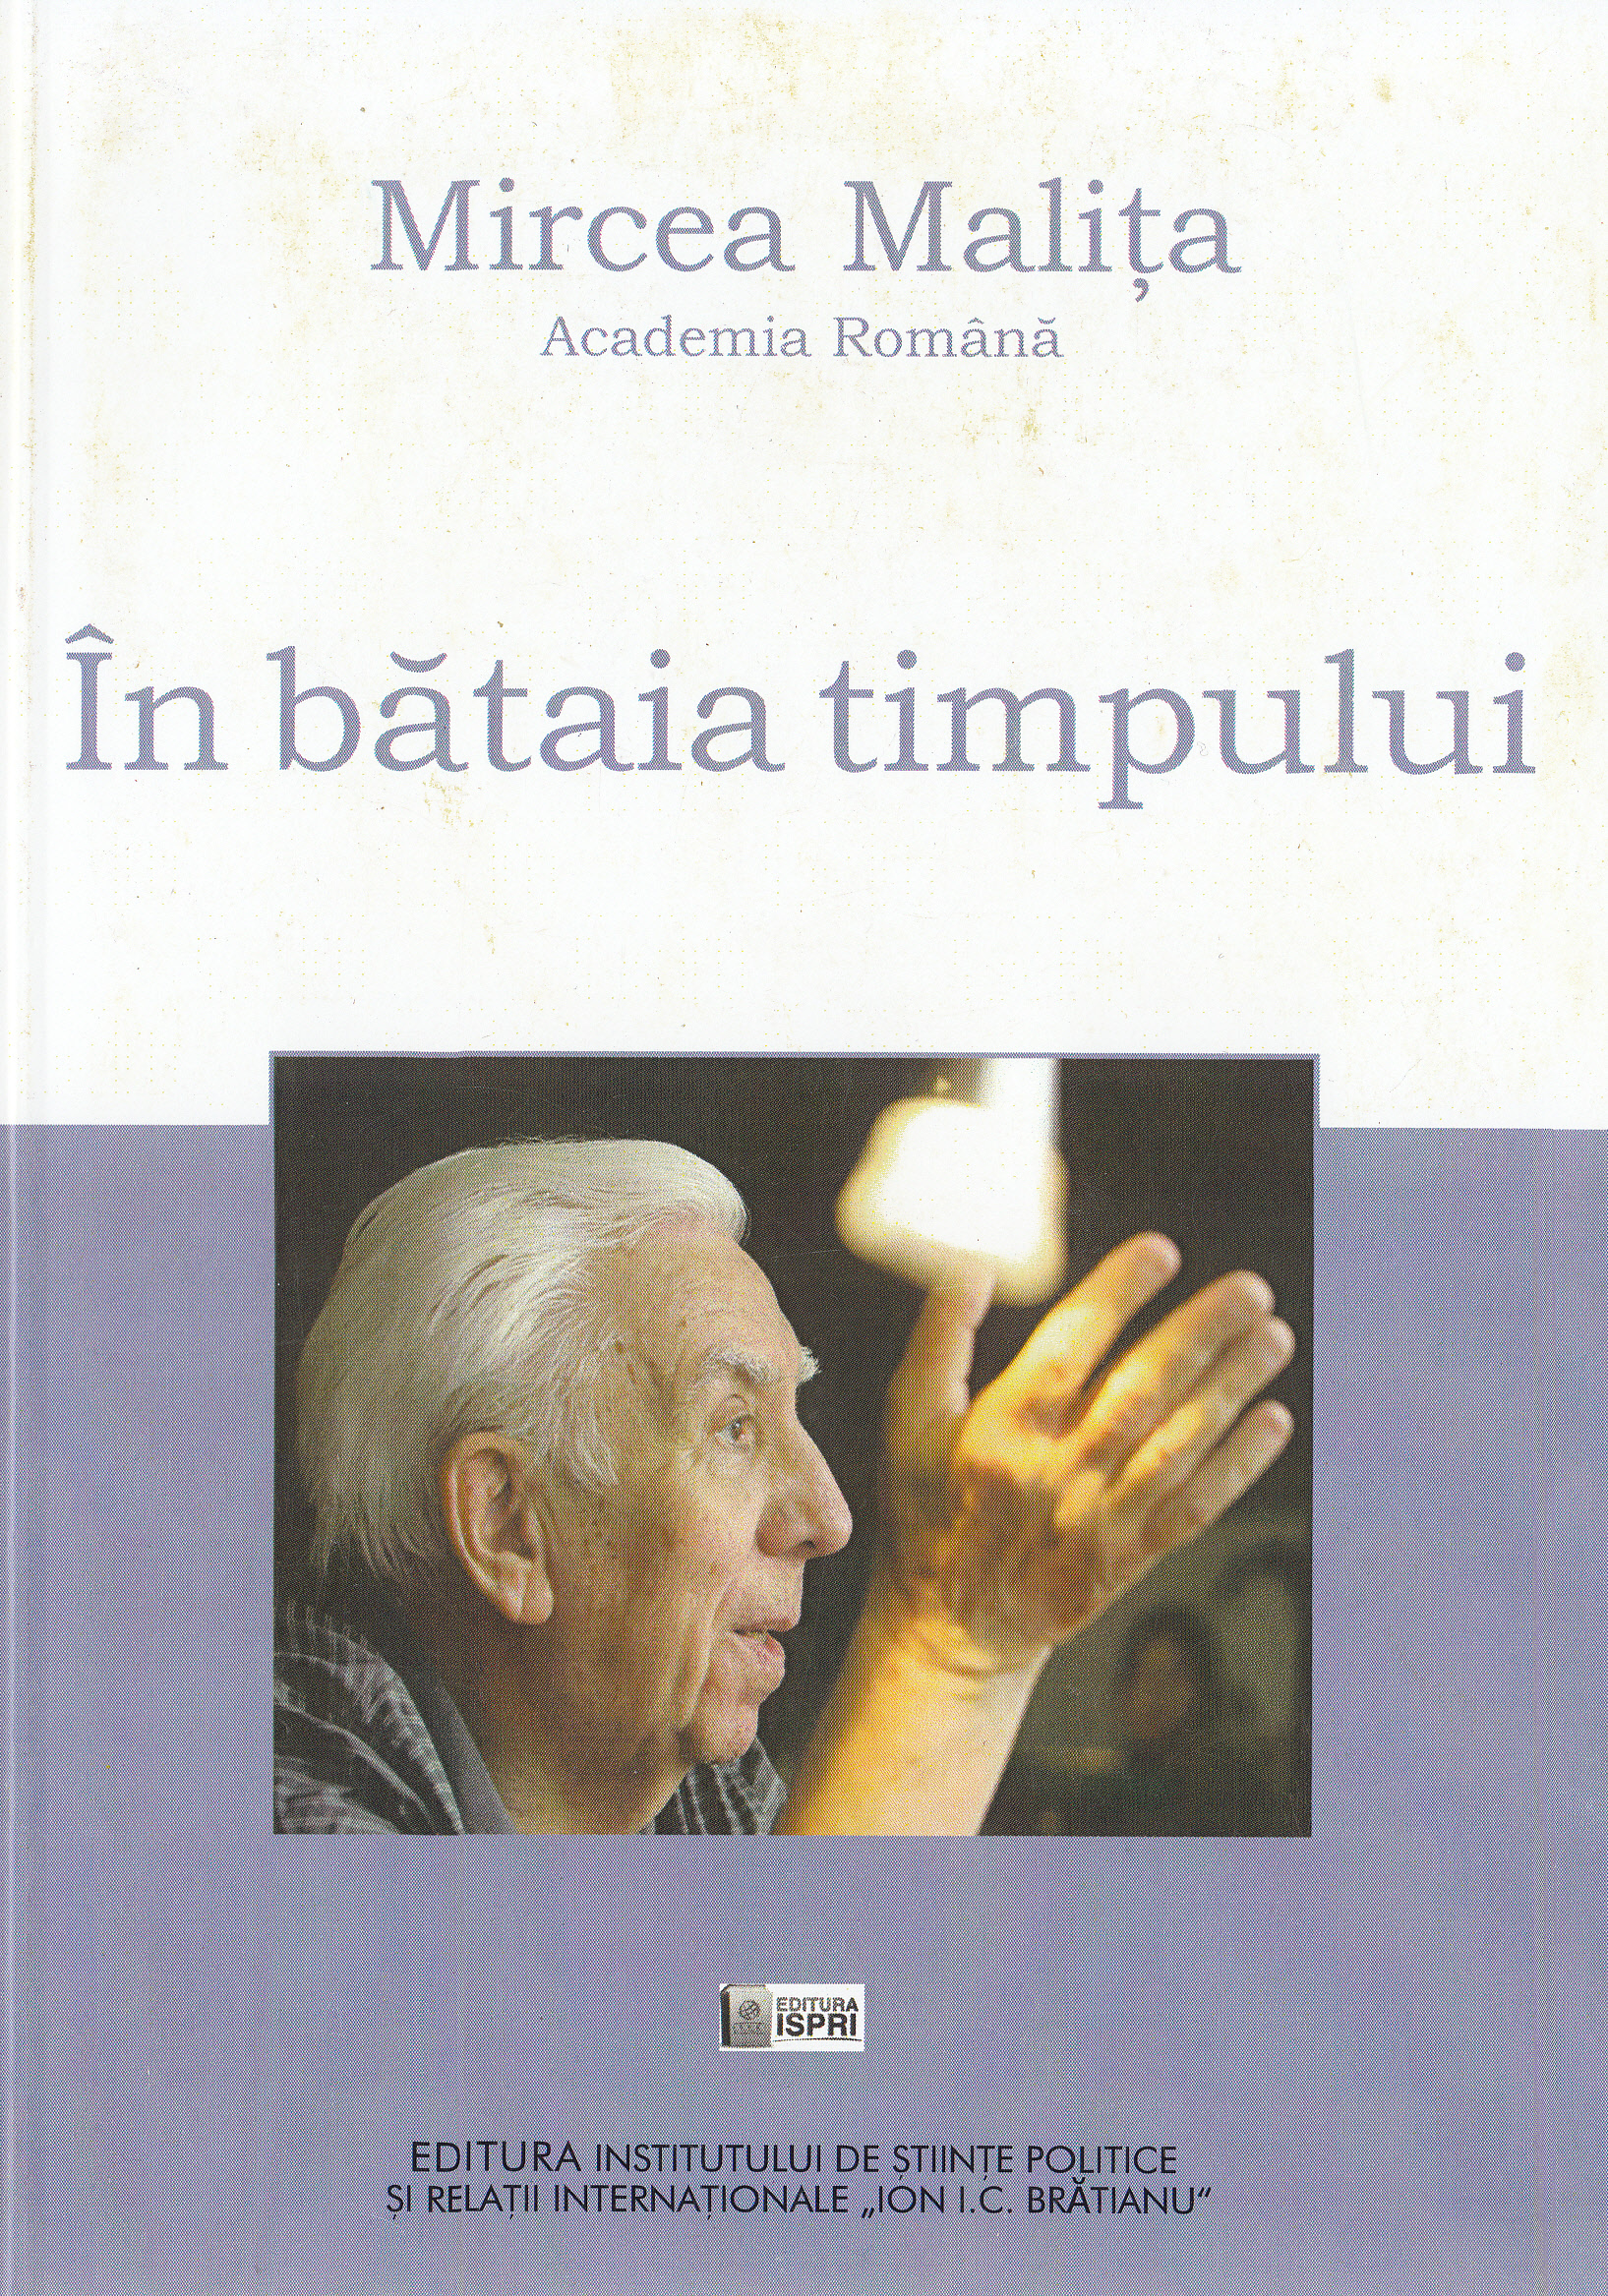 In bataia timpului - Mircea Malita in dialog cu Teodor Onea